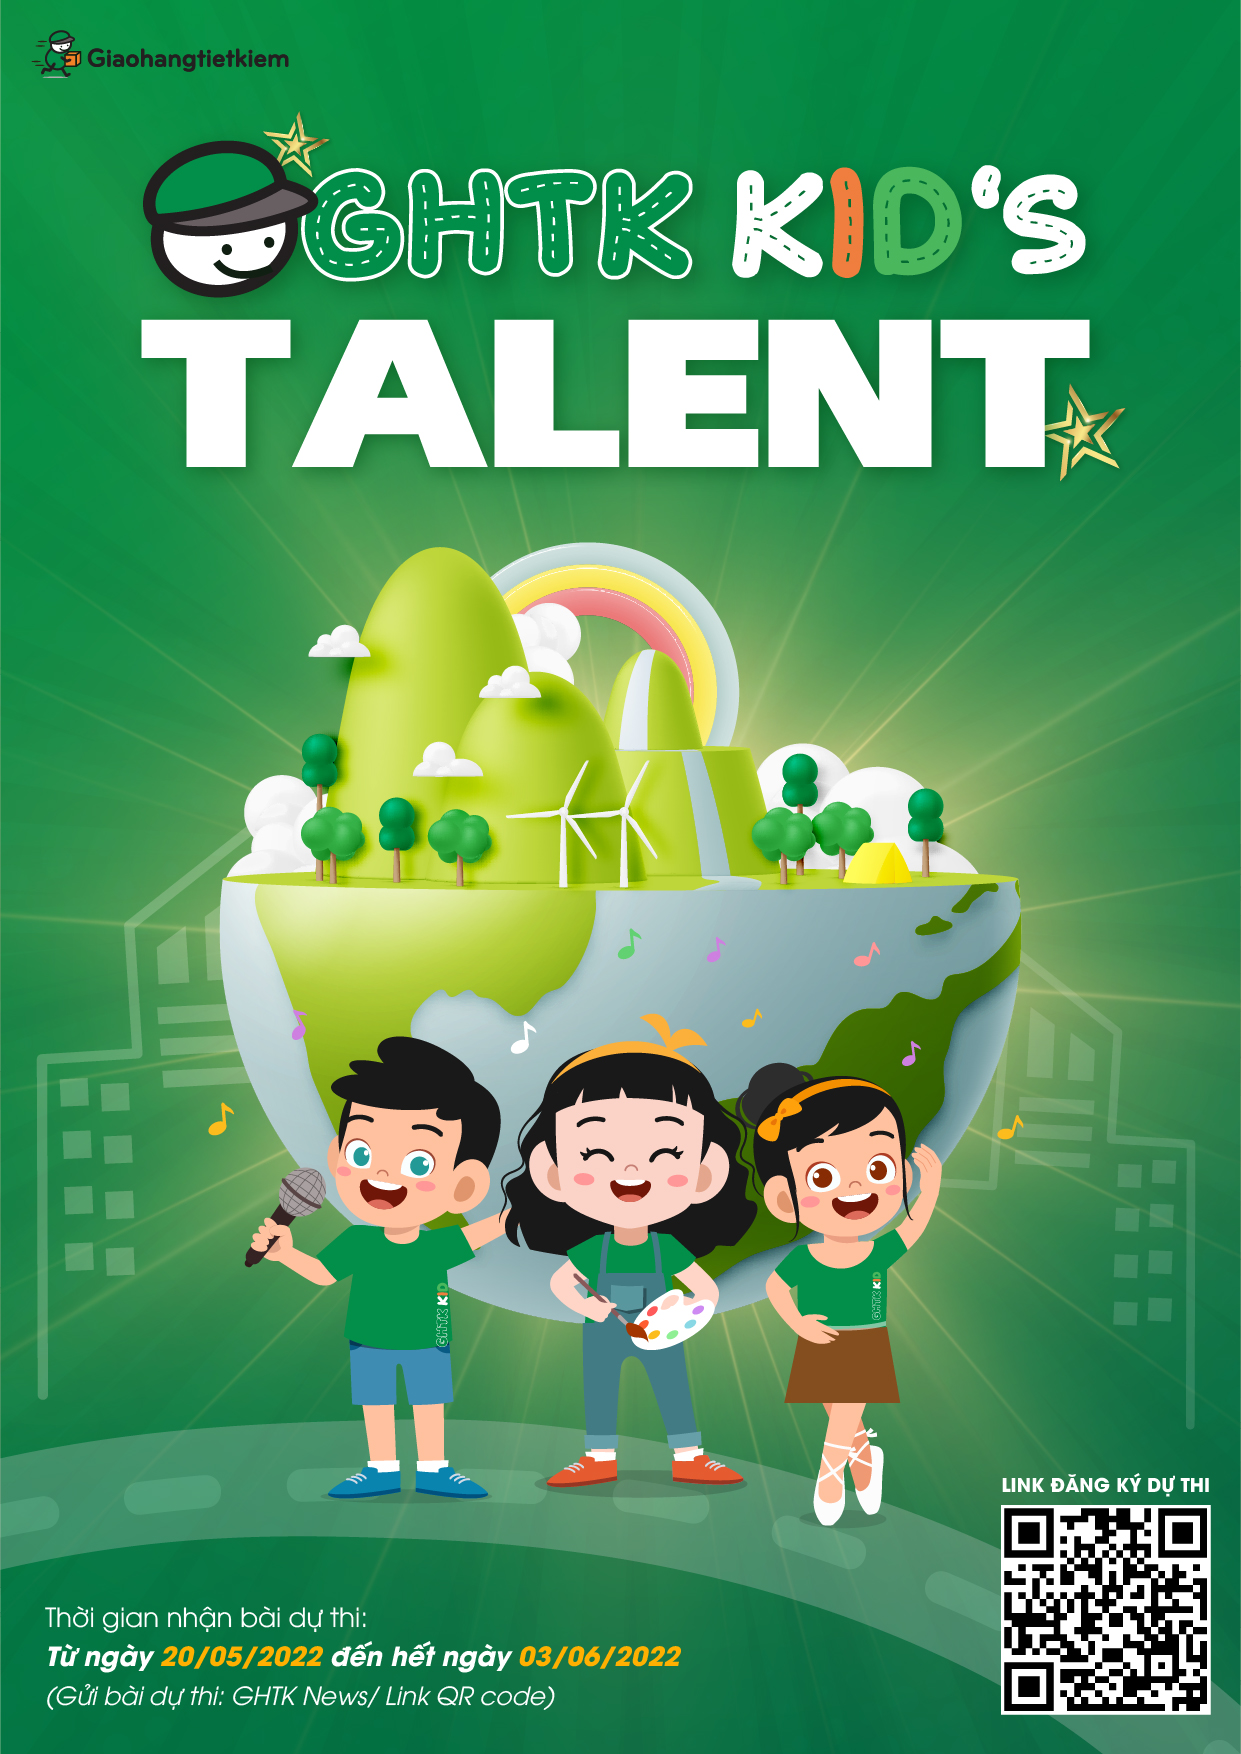 Thông Báo Phát Động Cuộc Thi Tài Năng Nhí Nhà Kiệm Ghtk Kid'S Talent 2022 -  Giao Hàng 6H Trong Ngày